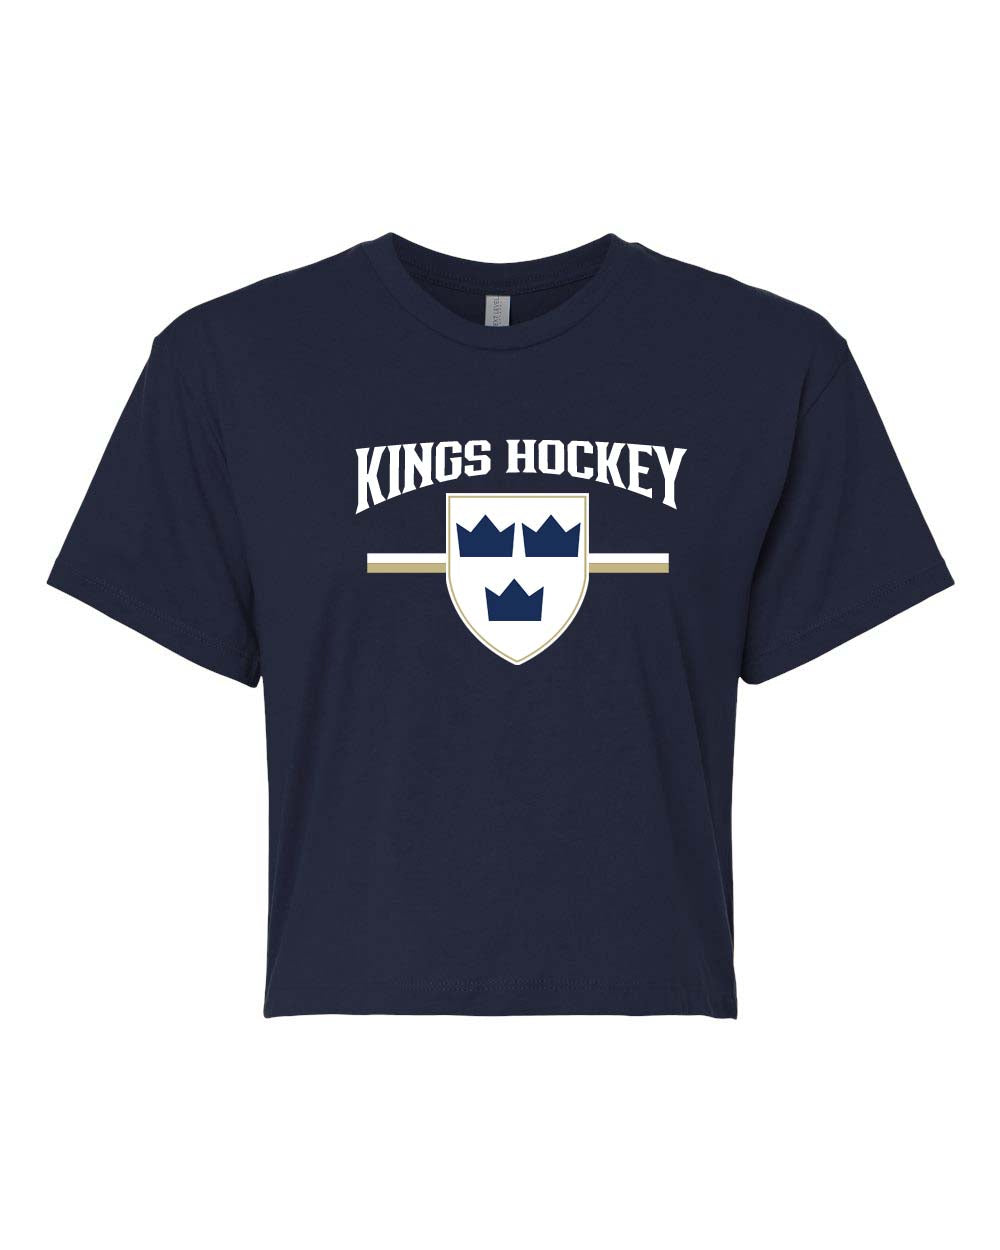 Kings Hockey Design 5 crop top